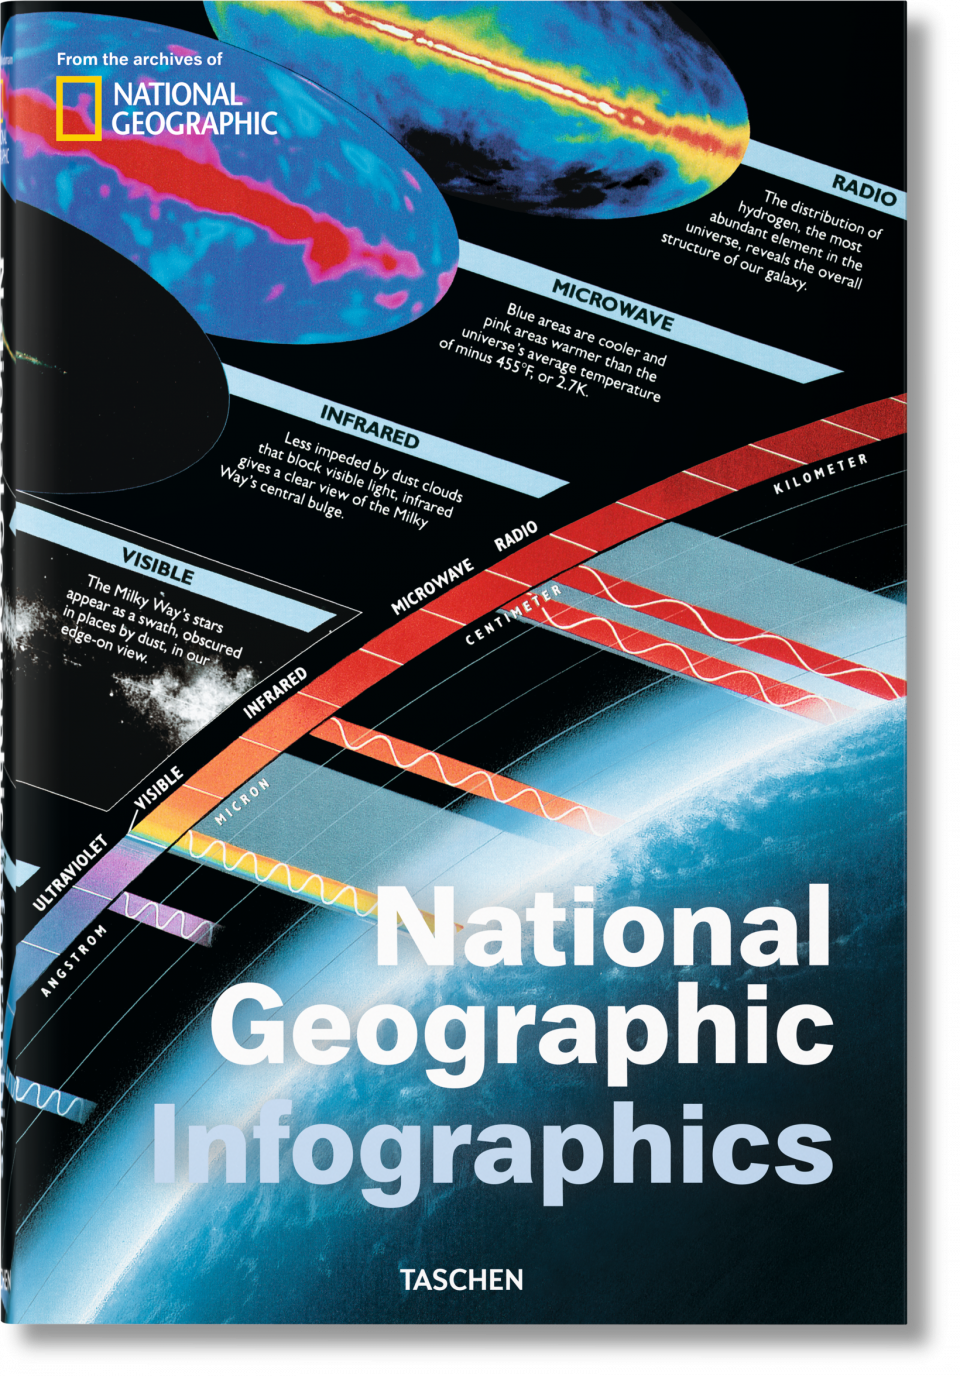 Las mejores infografías de National Geographic